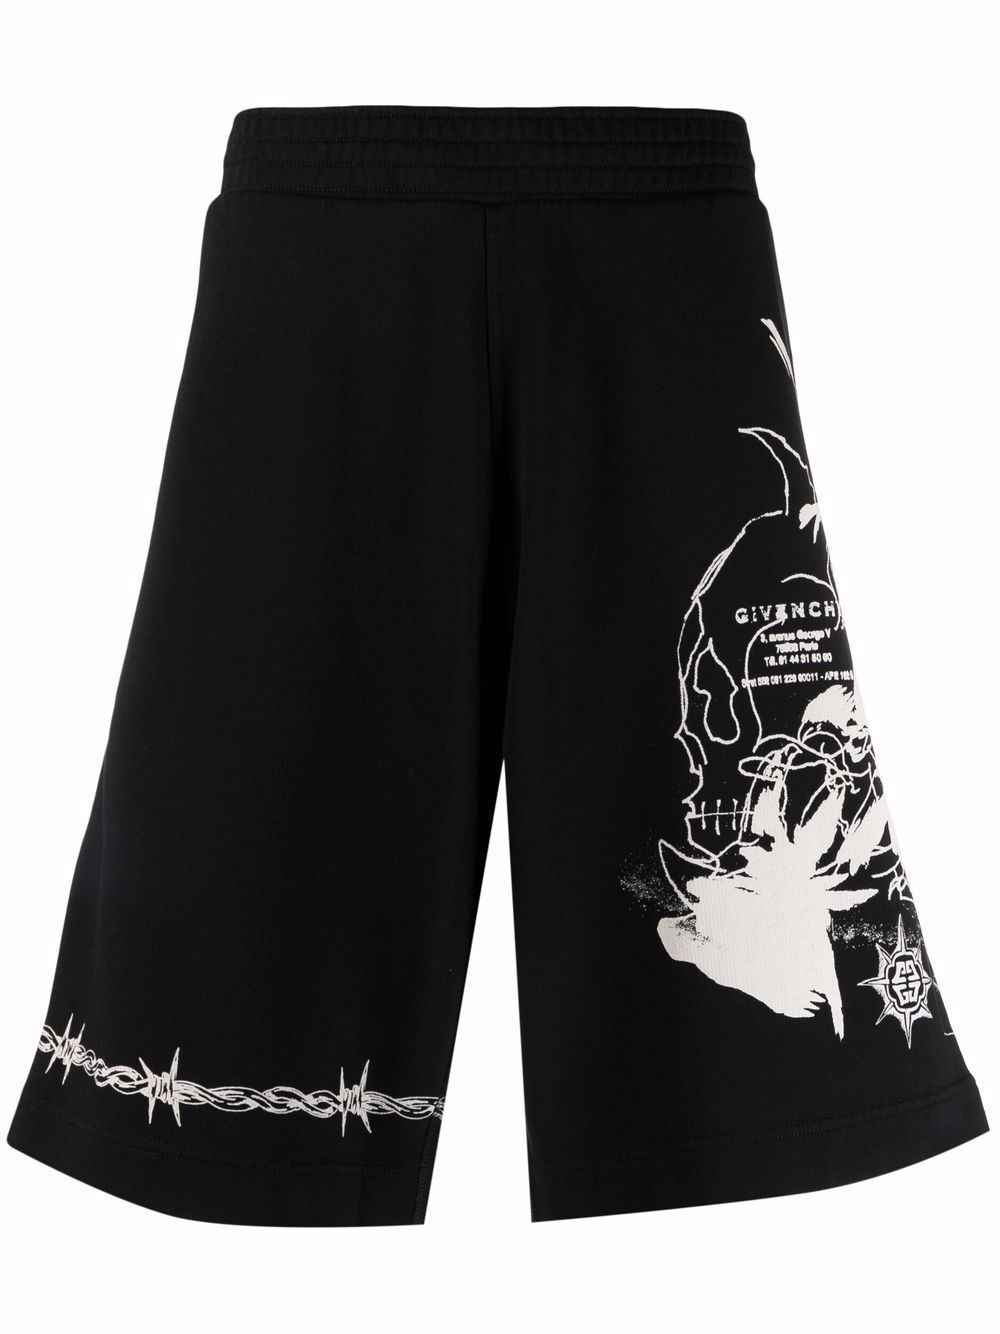 фото Givenchy спортивные шорты с принтом gothic